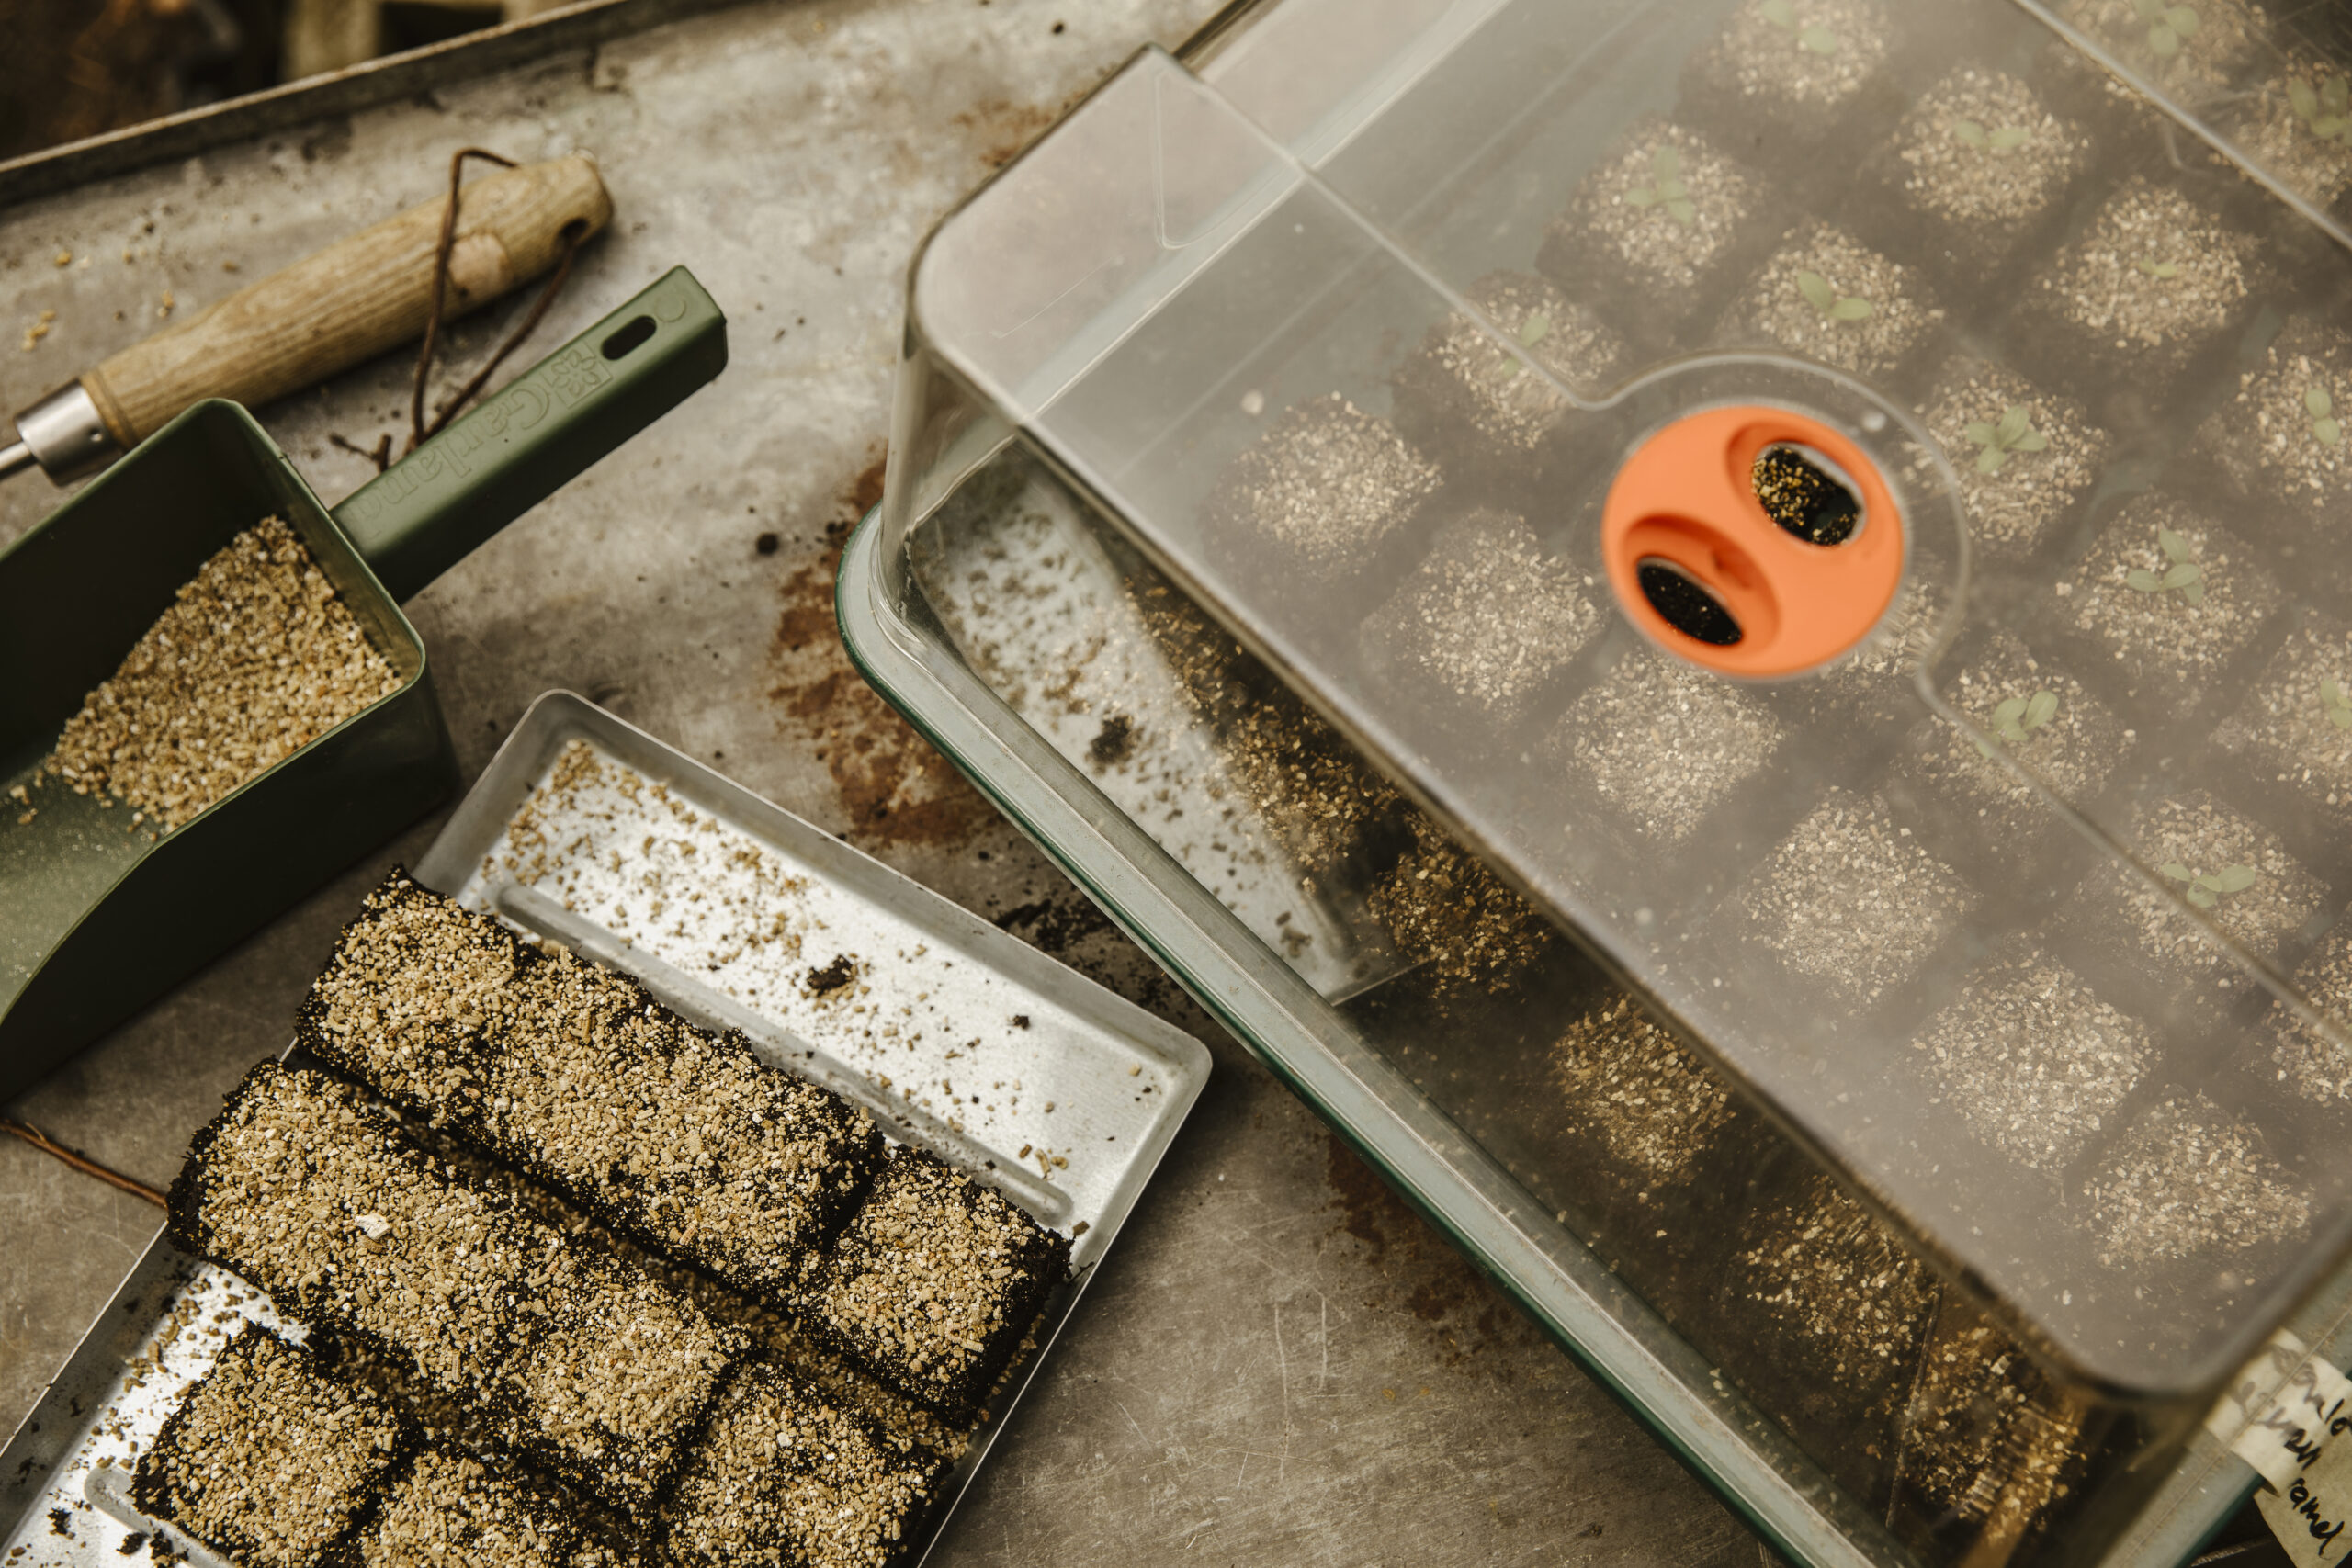 Damit die Samen nicht austrocknen, werden sie mit Vermiculit bedeckt, einem lockeren Anzuchtsubstrat mit hoher Wasser- und Feuchtigkeitsaufnahmefähigkeit.